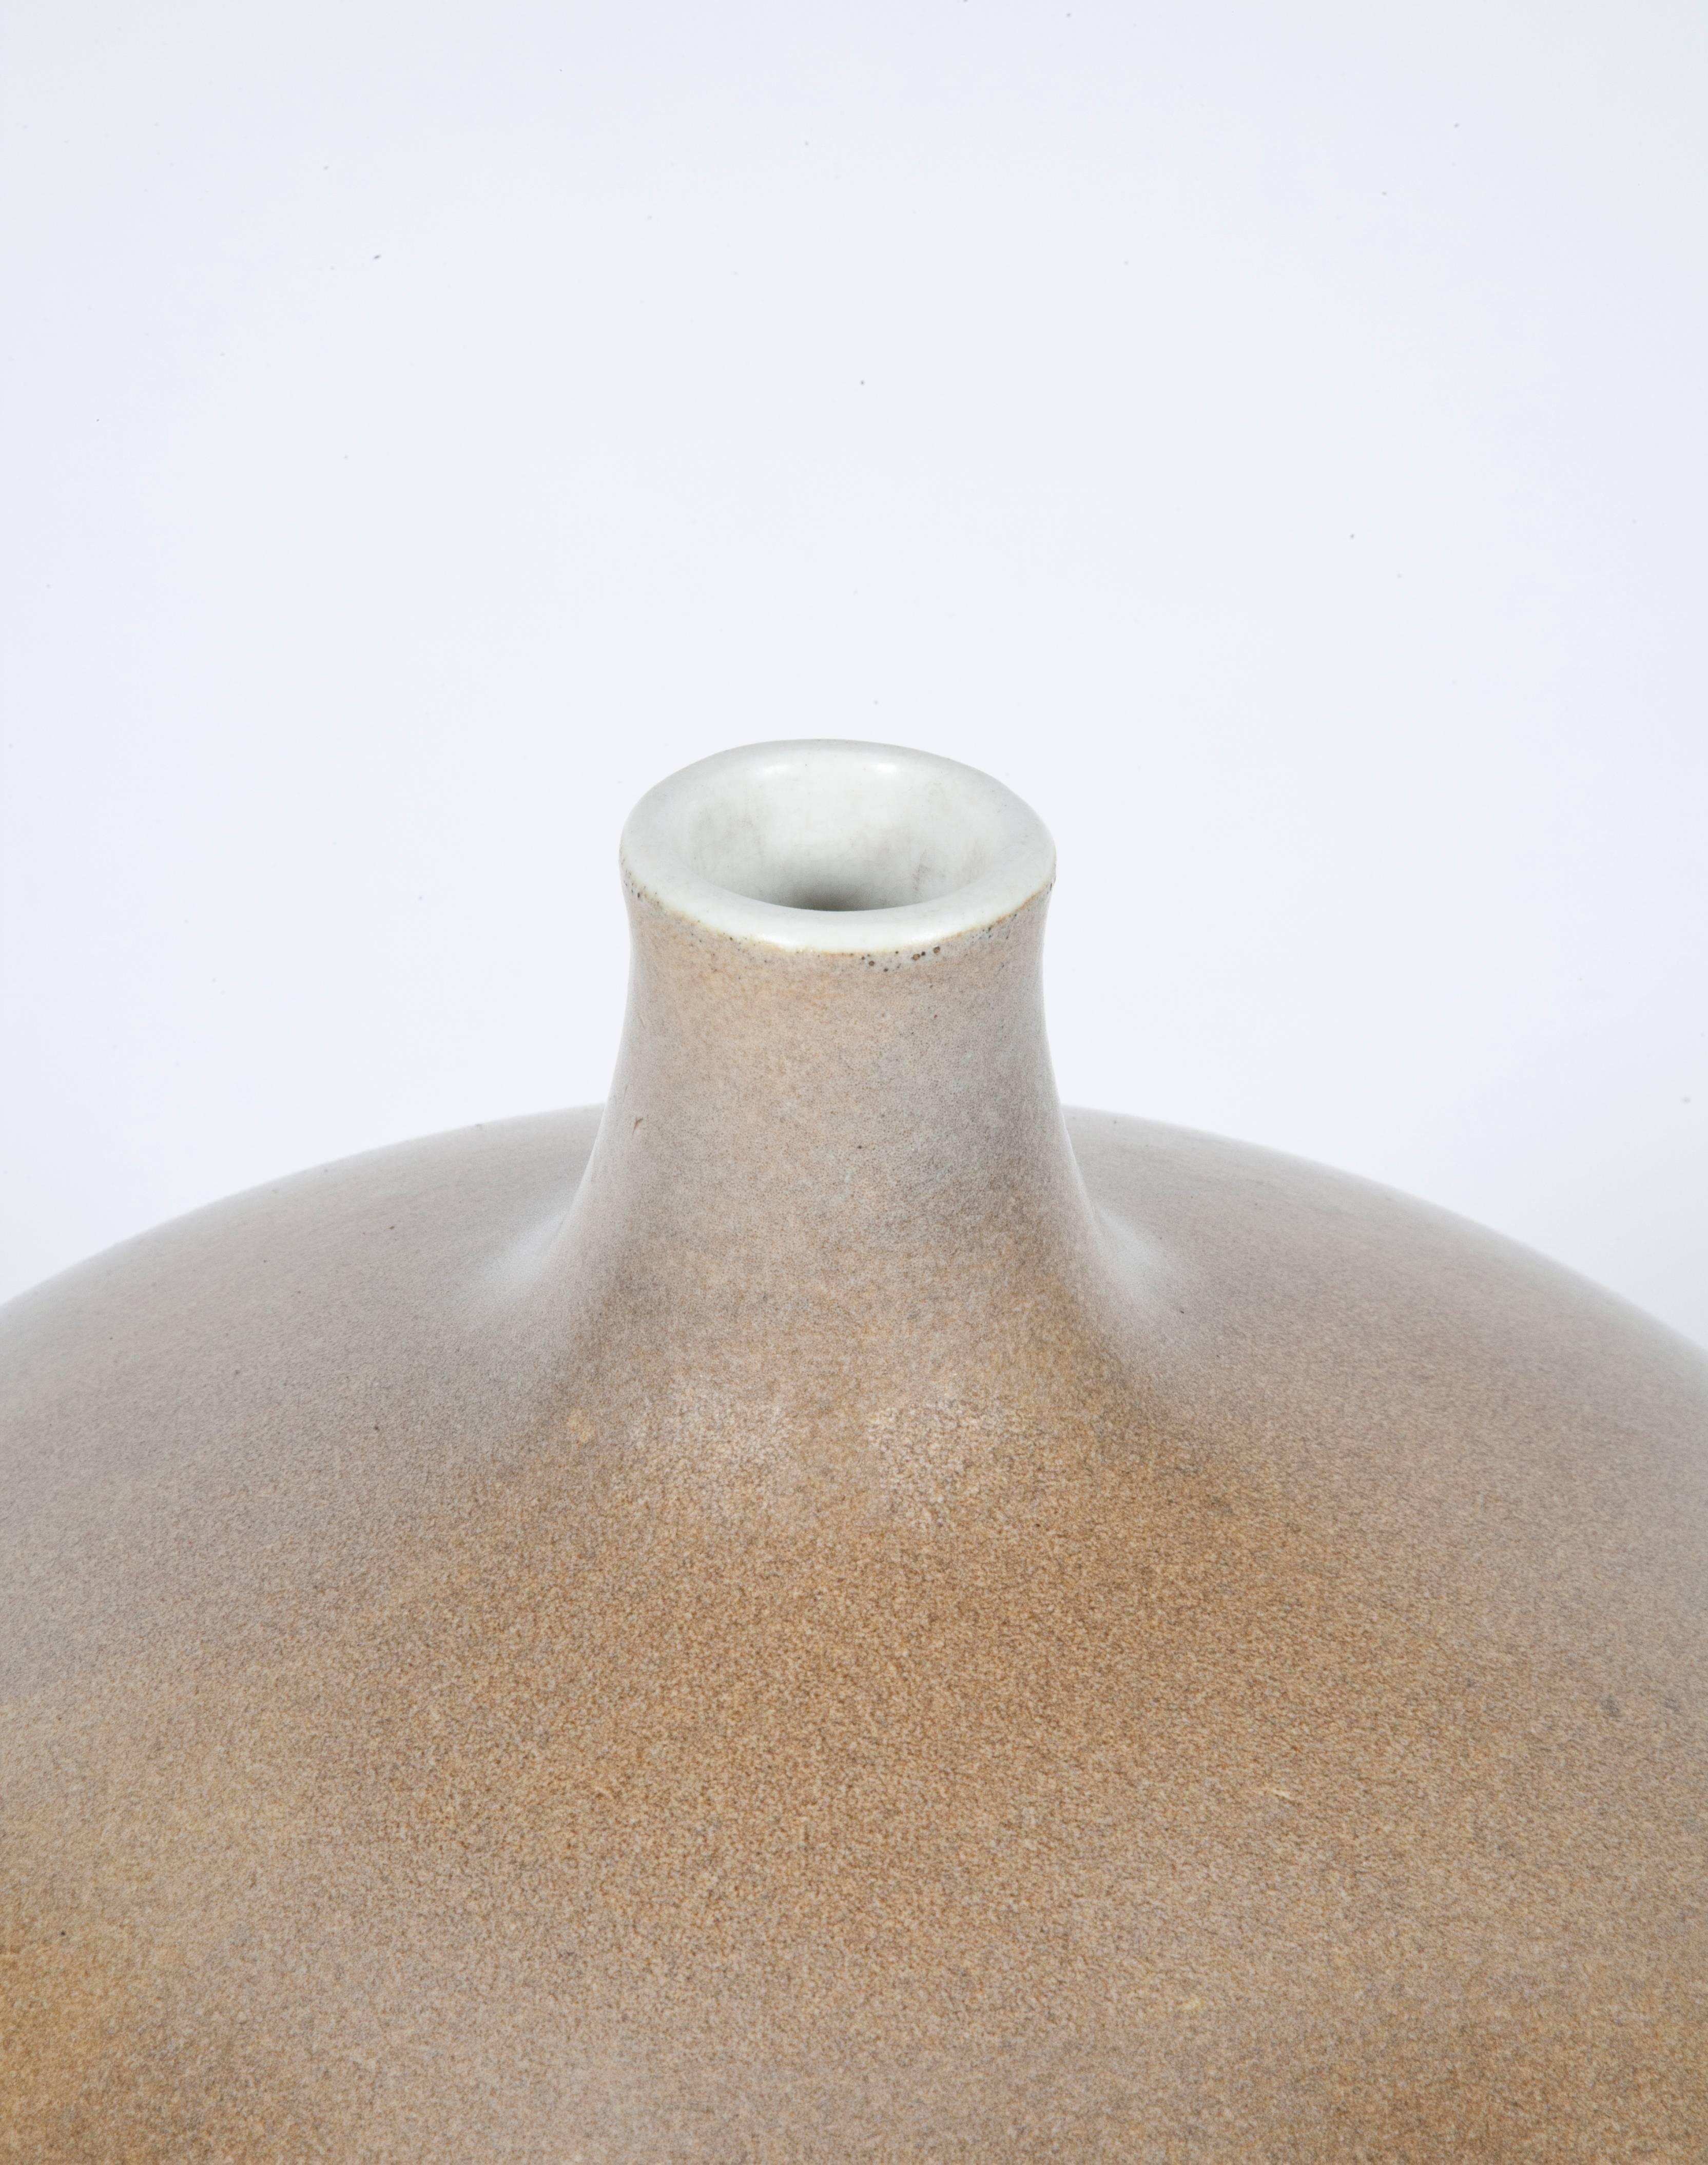 Large ceramic vase by Giuseppe Gariboldi for Richard Ginori. Stamped and numbered.